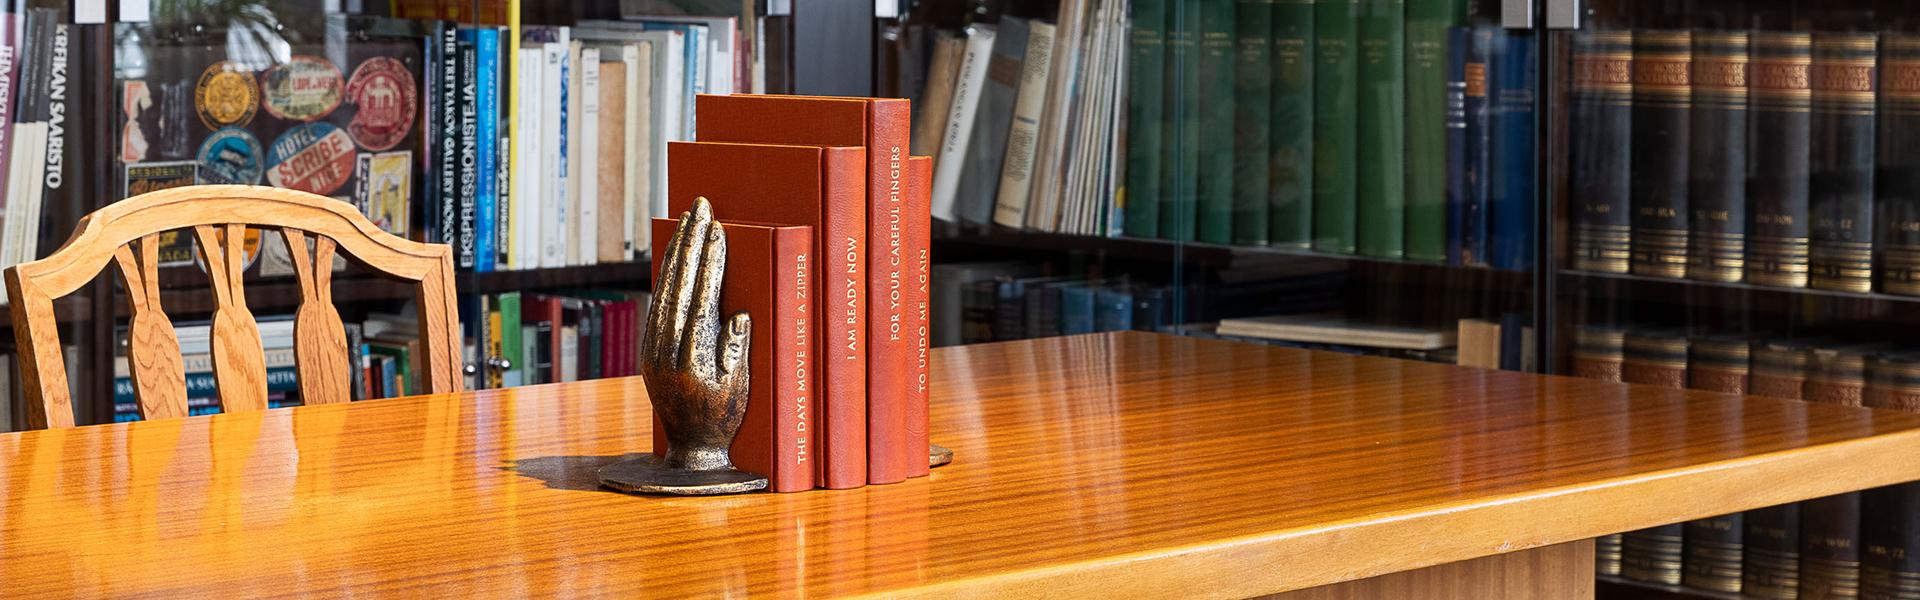 Ruskea pöytä, jossa kädenmuotoinen kirjanpidike ja punaisia kirjoja. Taustalla kirjahylly.